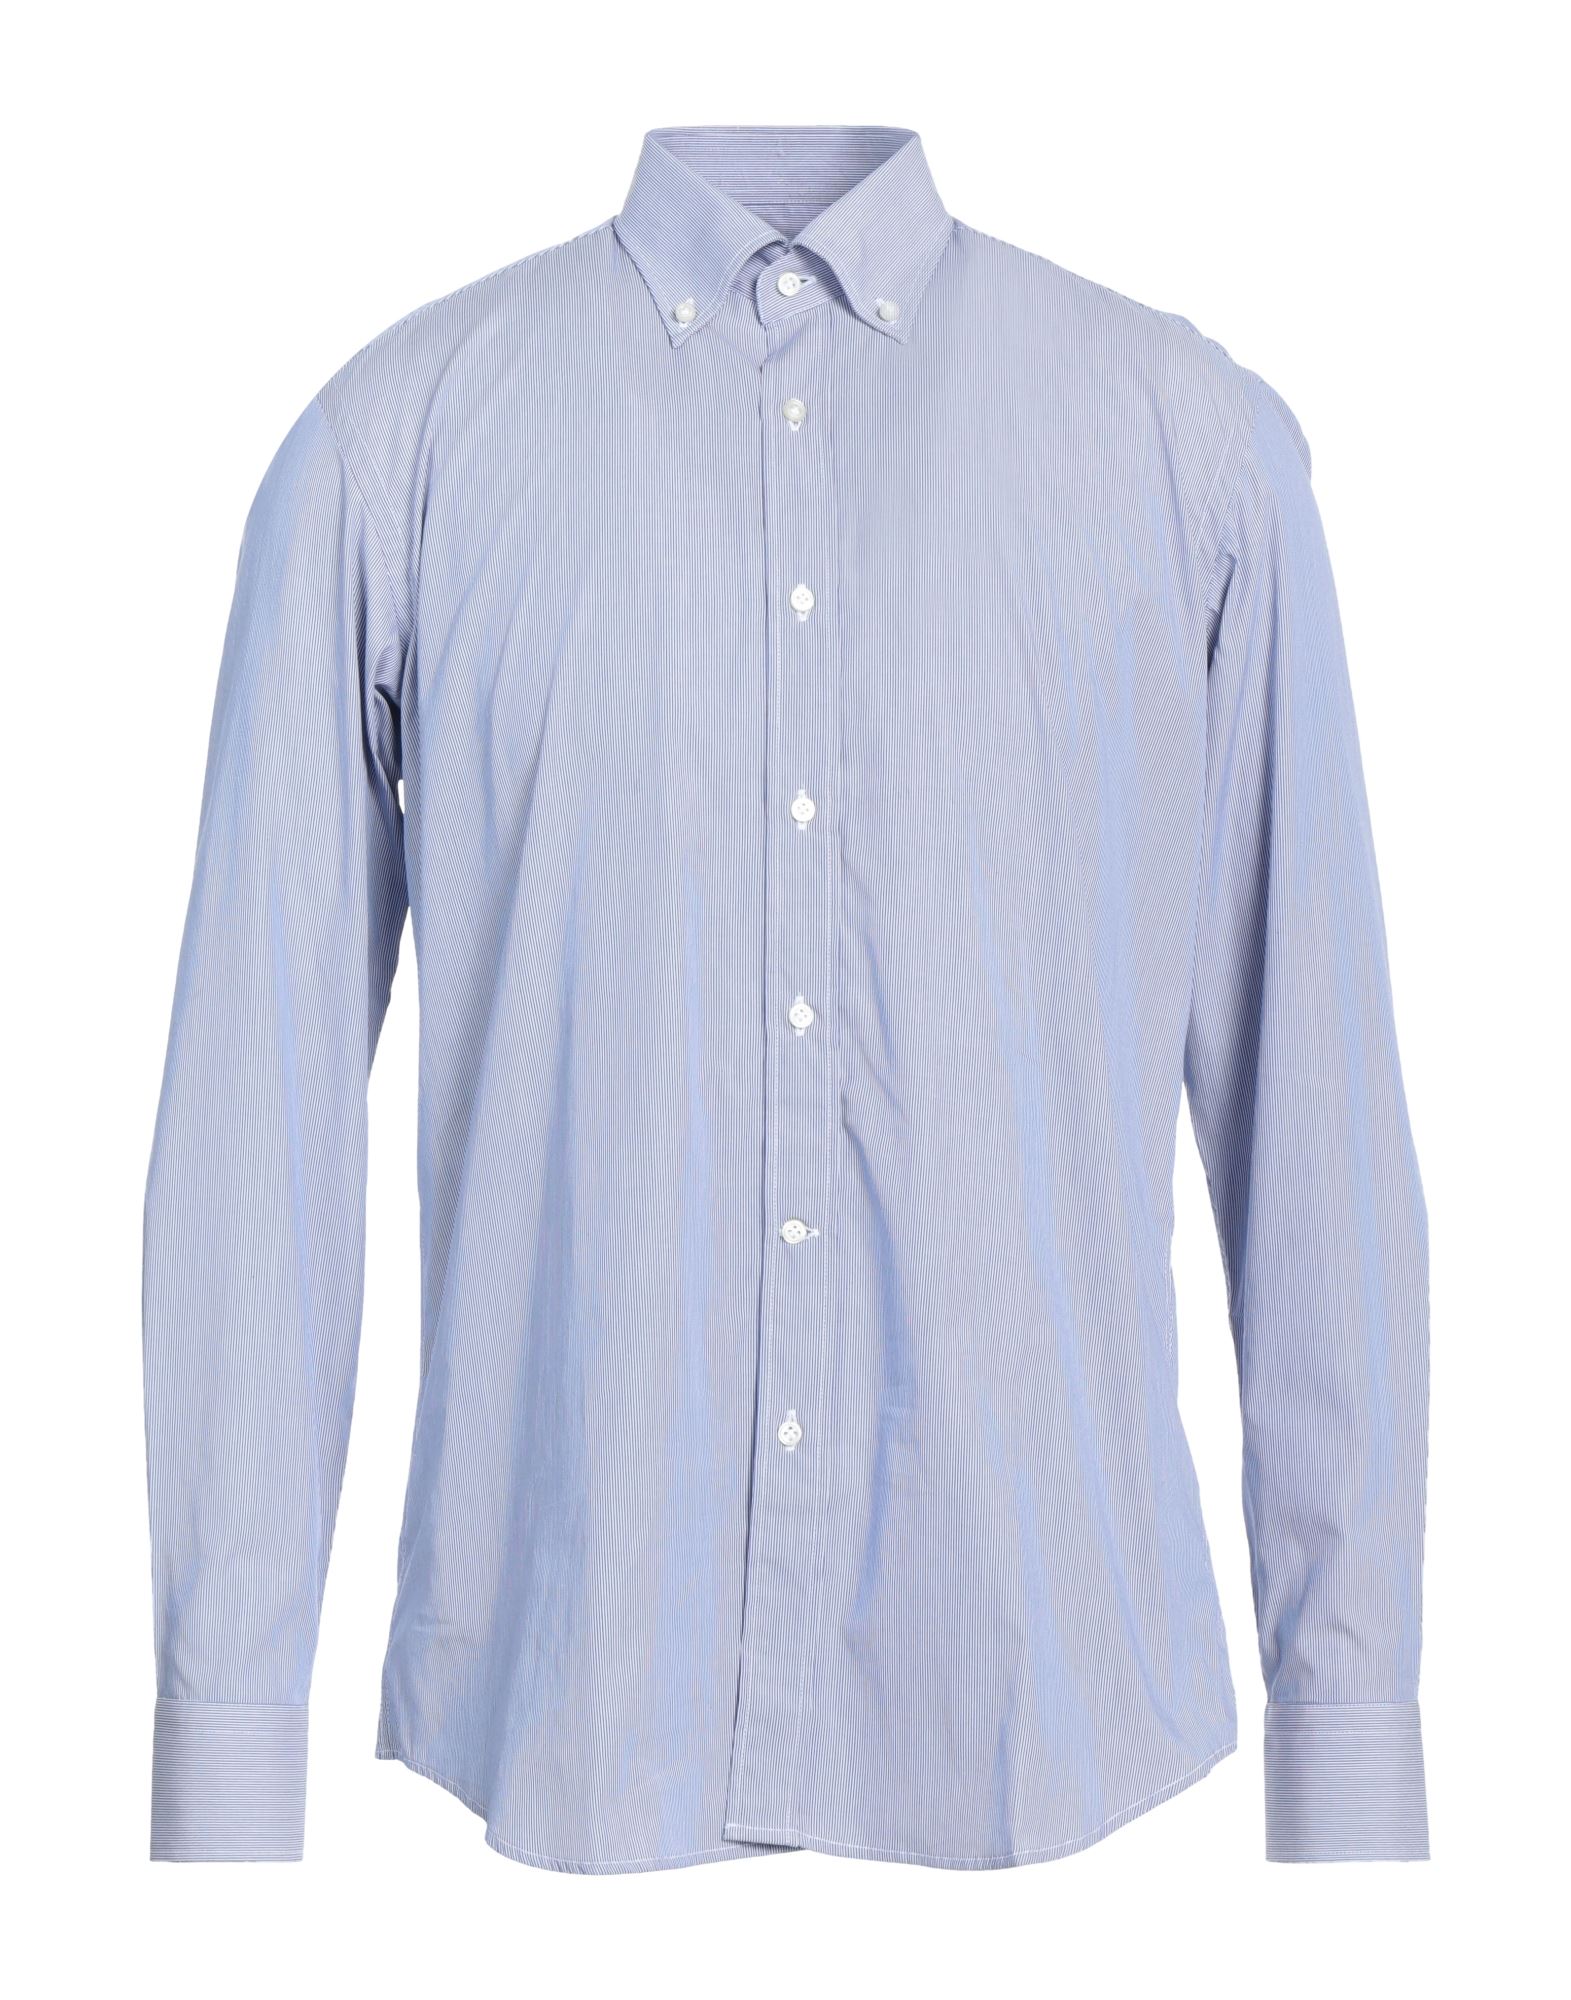 P. Langella Shirts In Blue | ModeSens